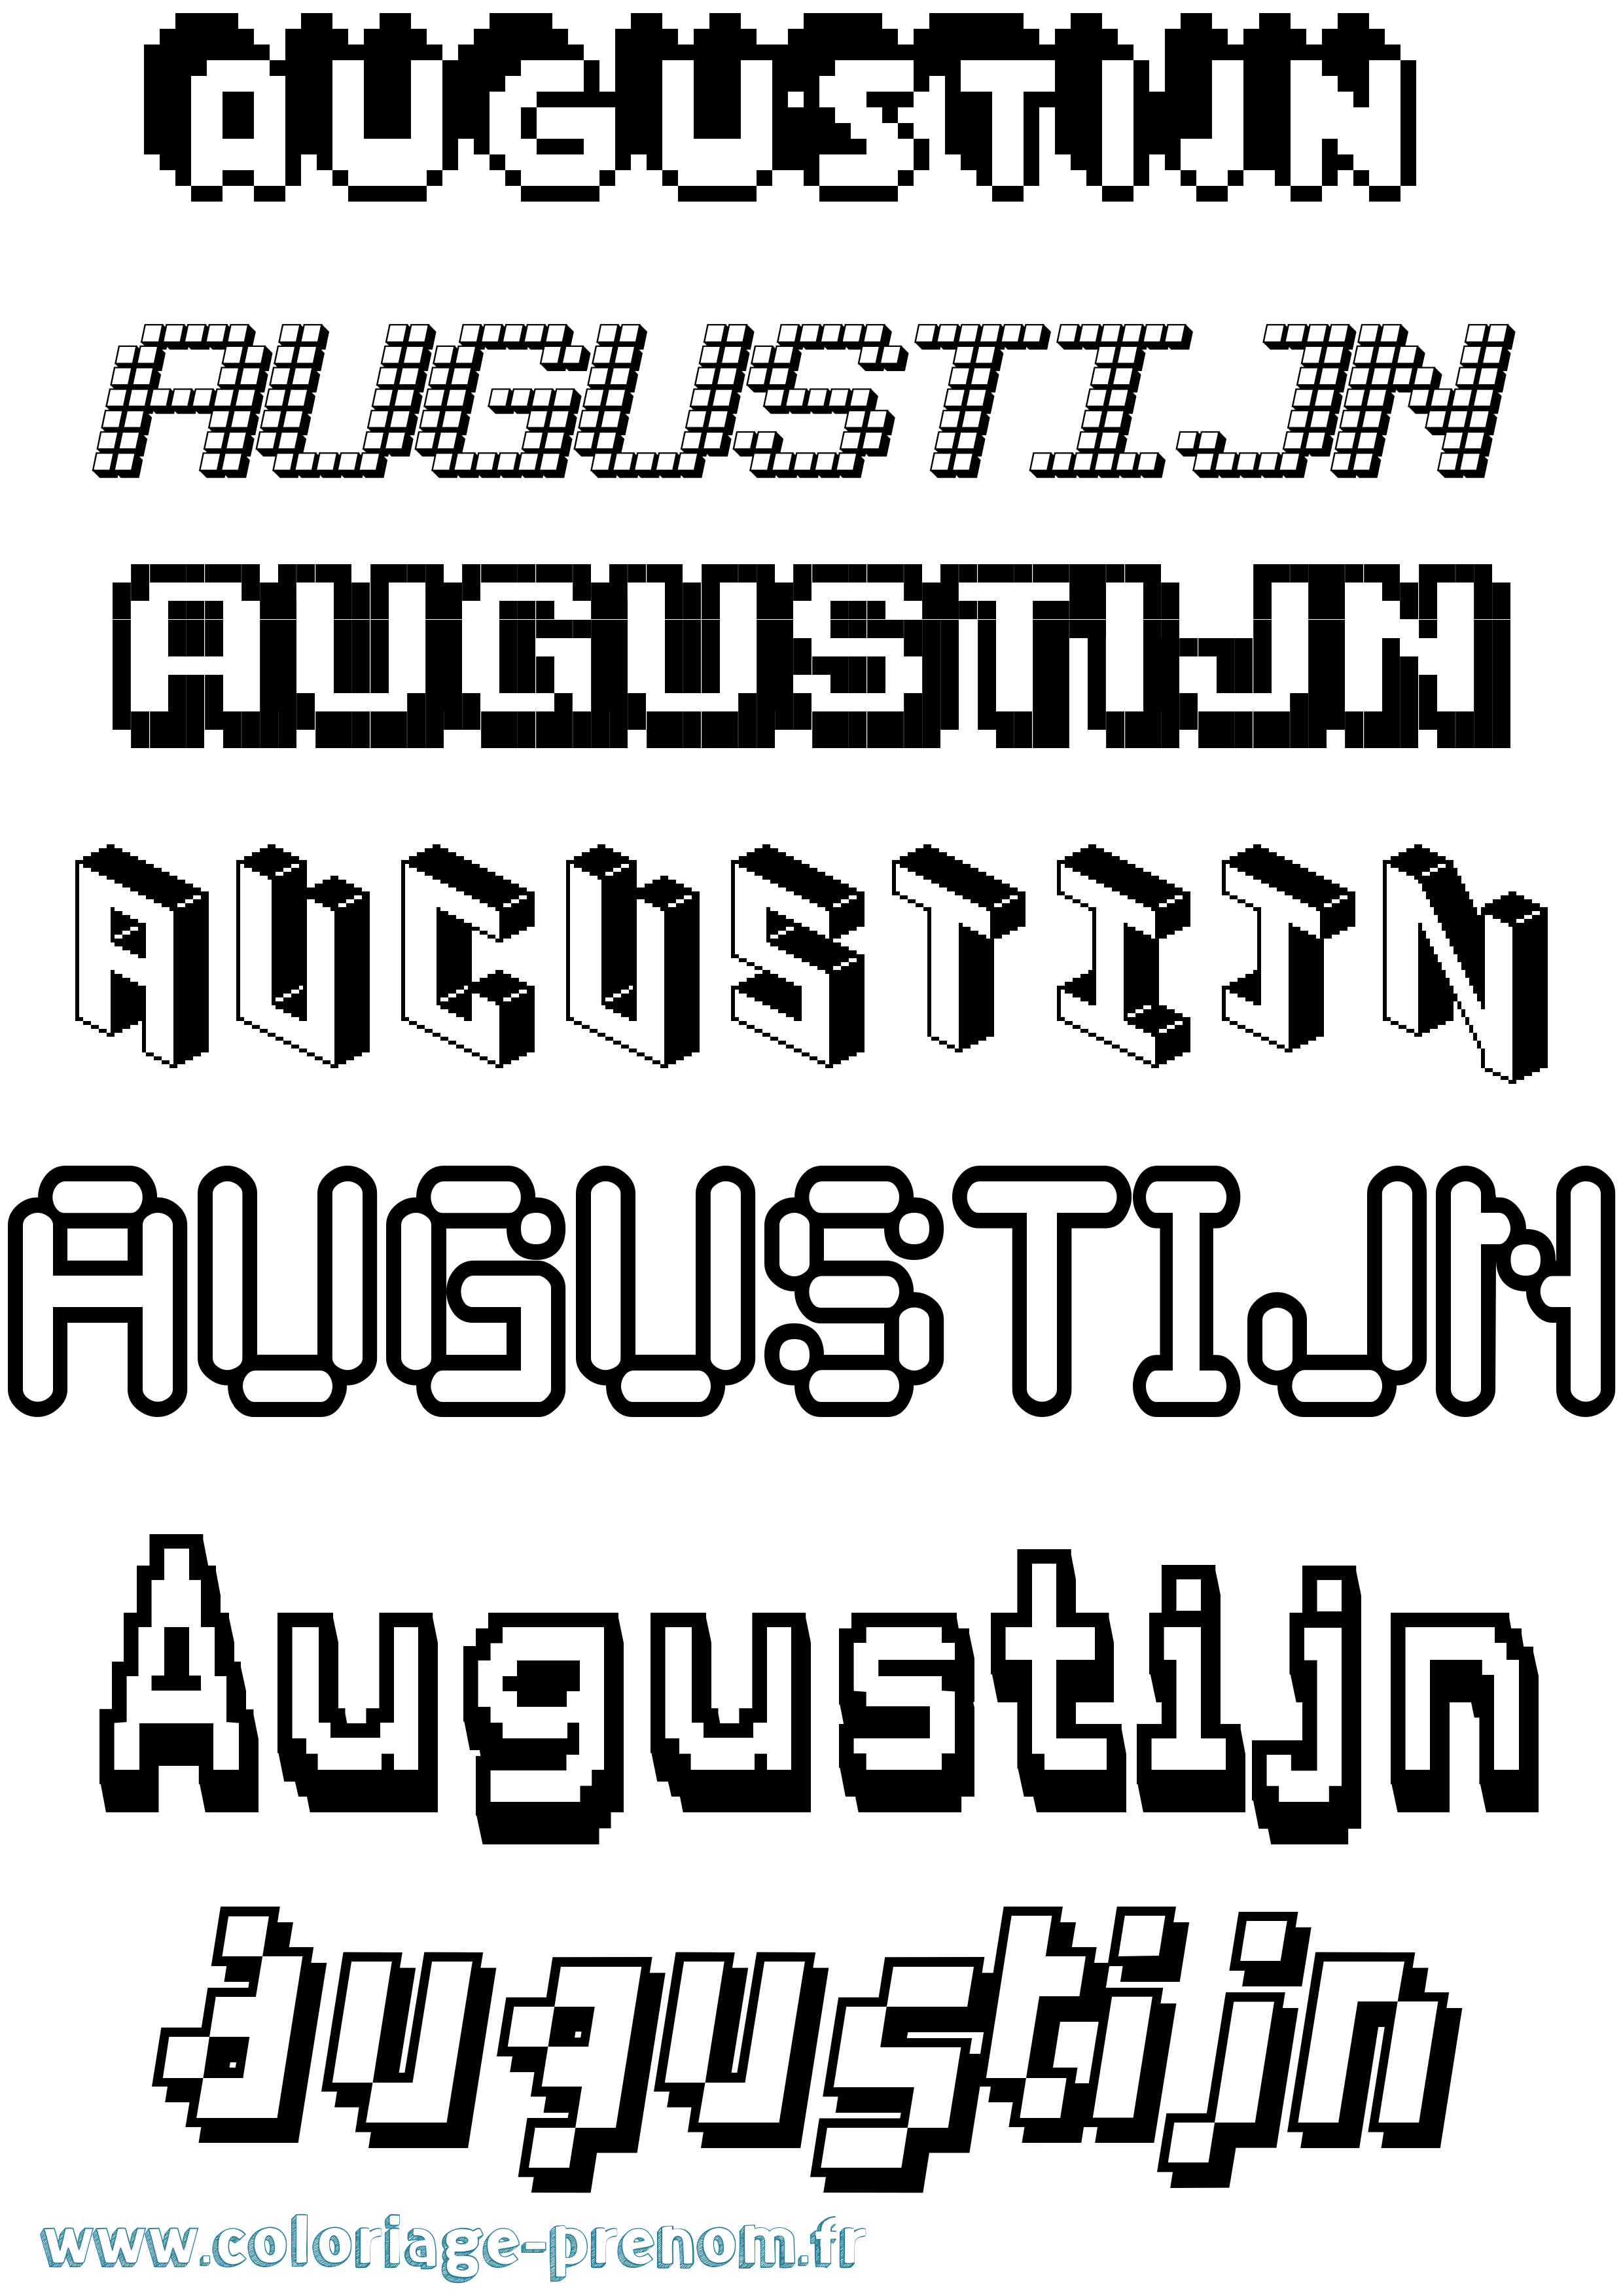 Coloriage prénom Augustijn Pixel